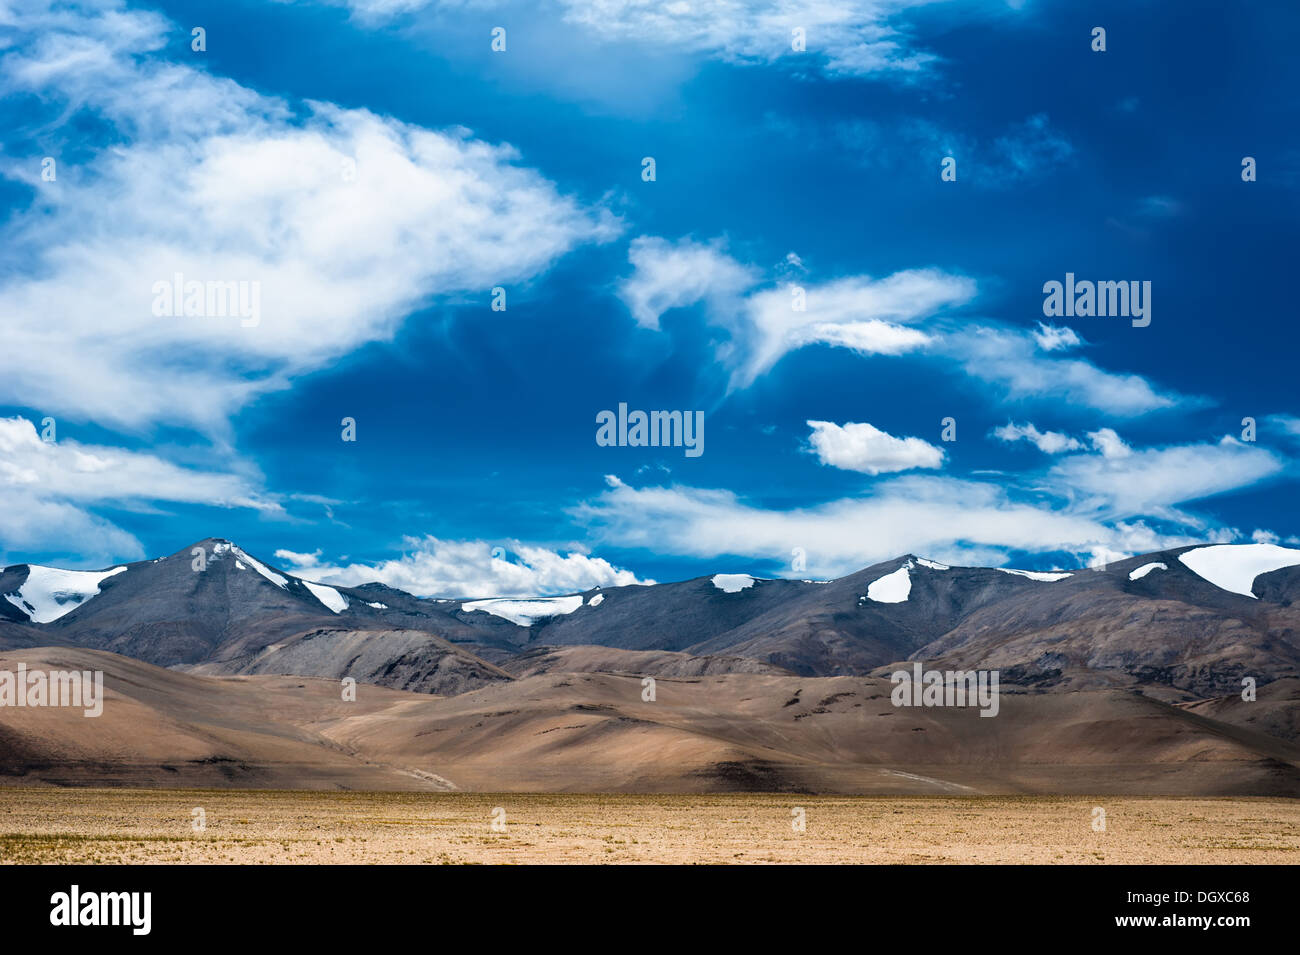 Paysage de haute montagne Himalaya blue panorama avec ciel nuageux. L'Inde, le Ladakh, près de Salt Lake Tso Kar, altitude 4600 m Banque D'Images